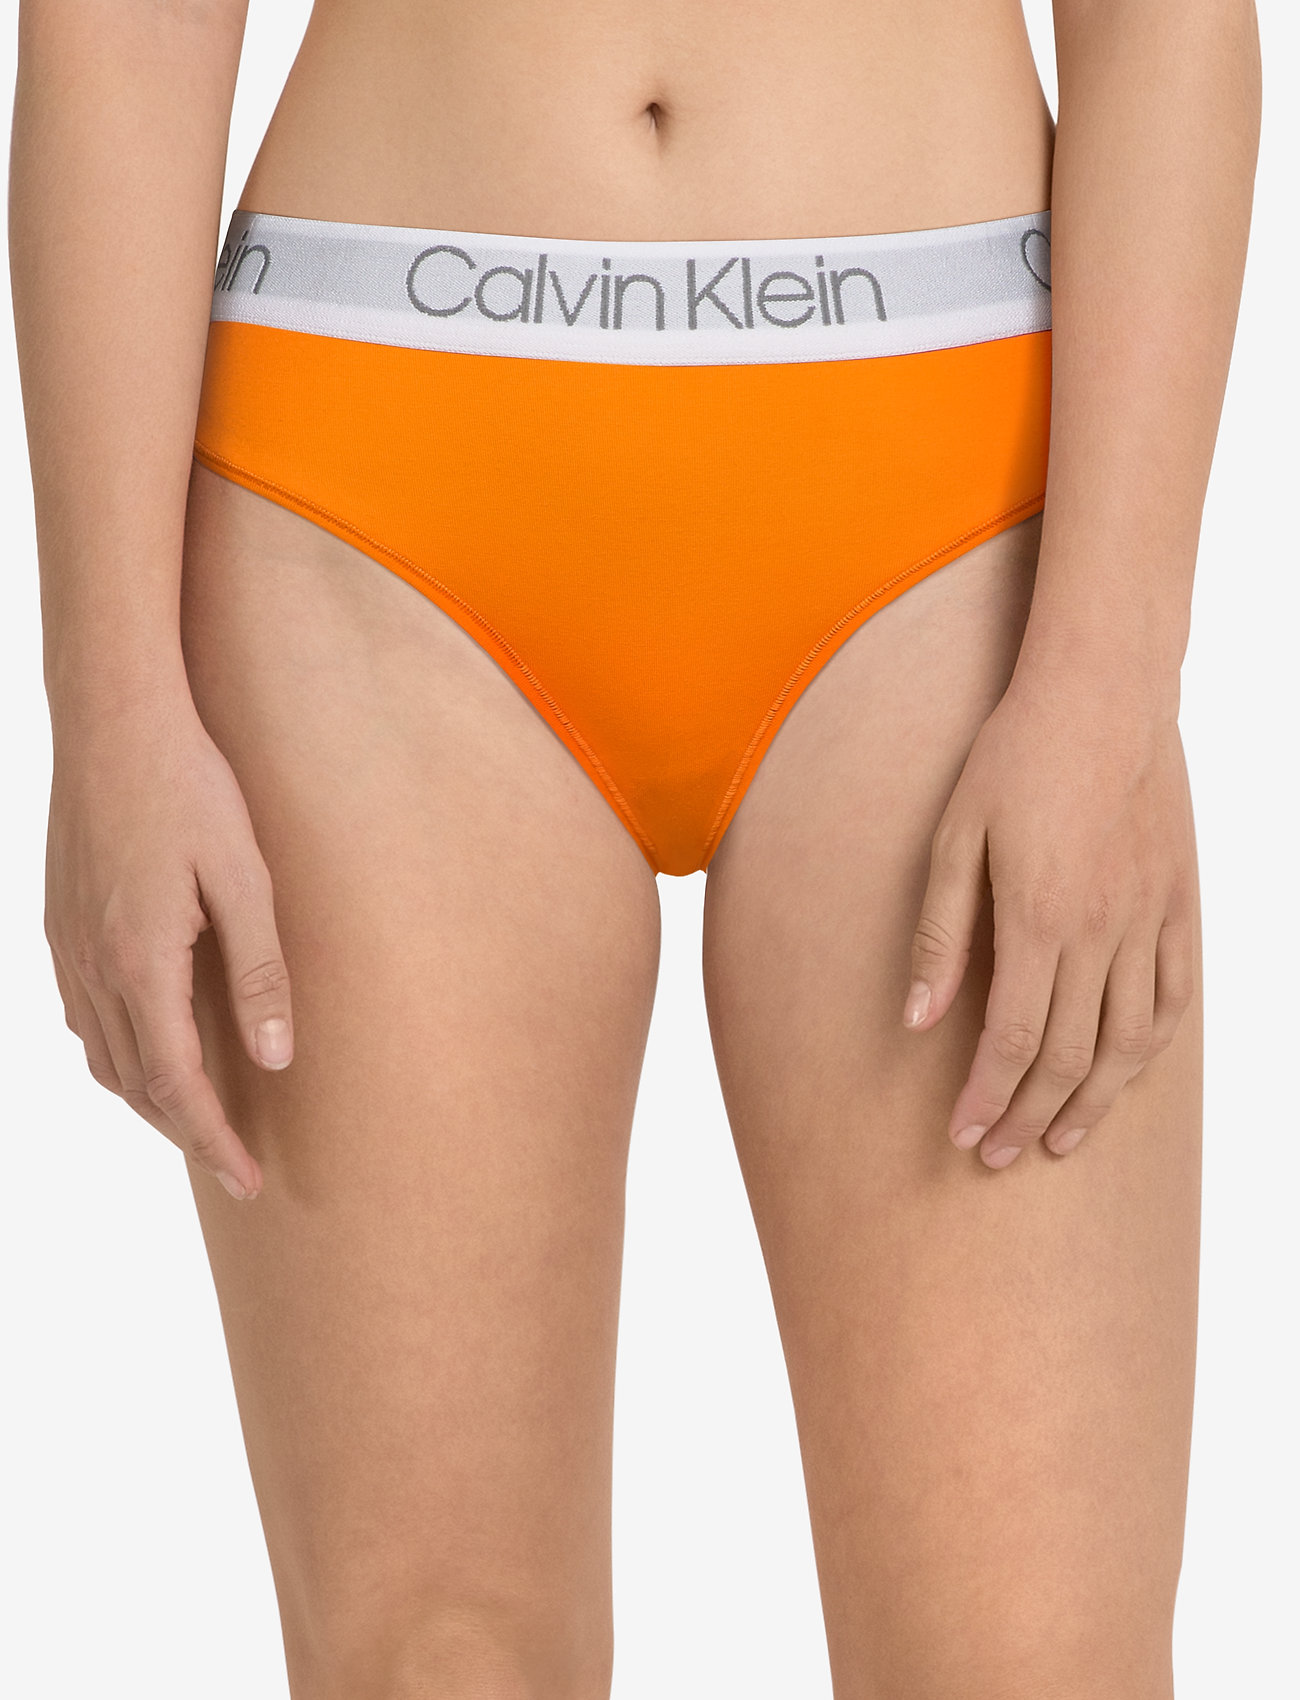 calvin klein orange thong